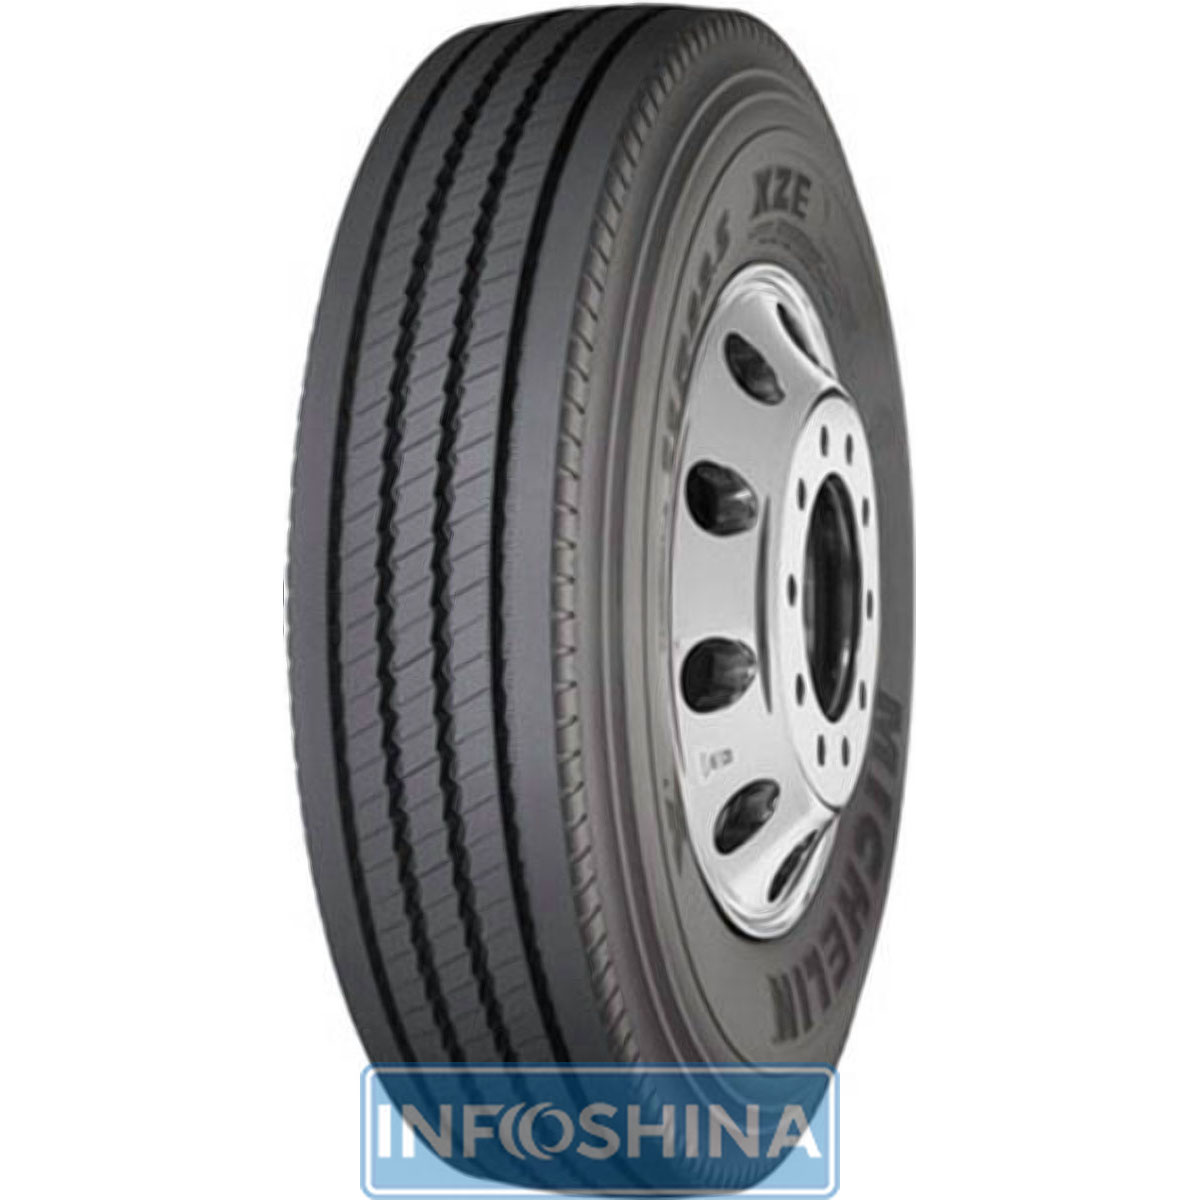 Купить шины Michelin XZE (универсальная) 335/80 R20 154K